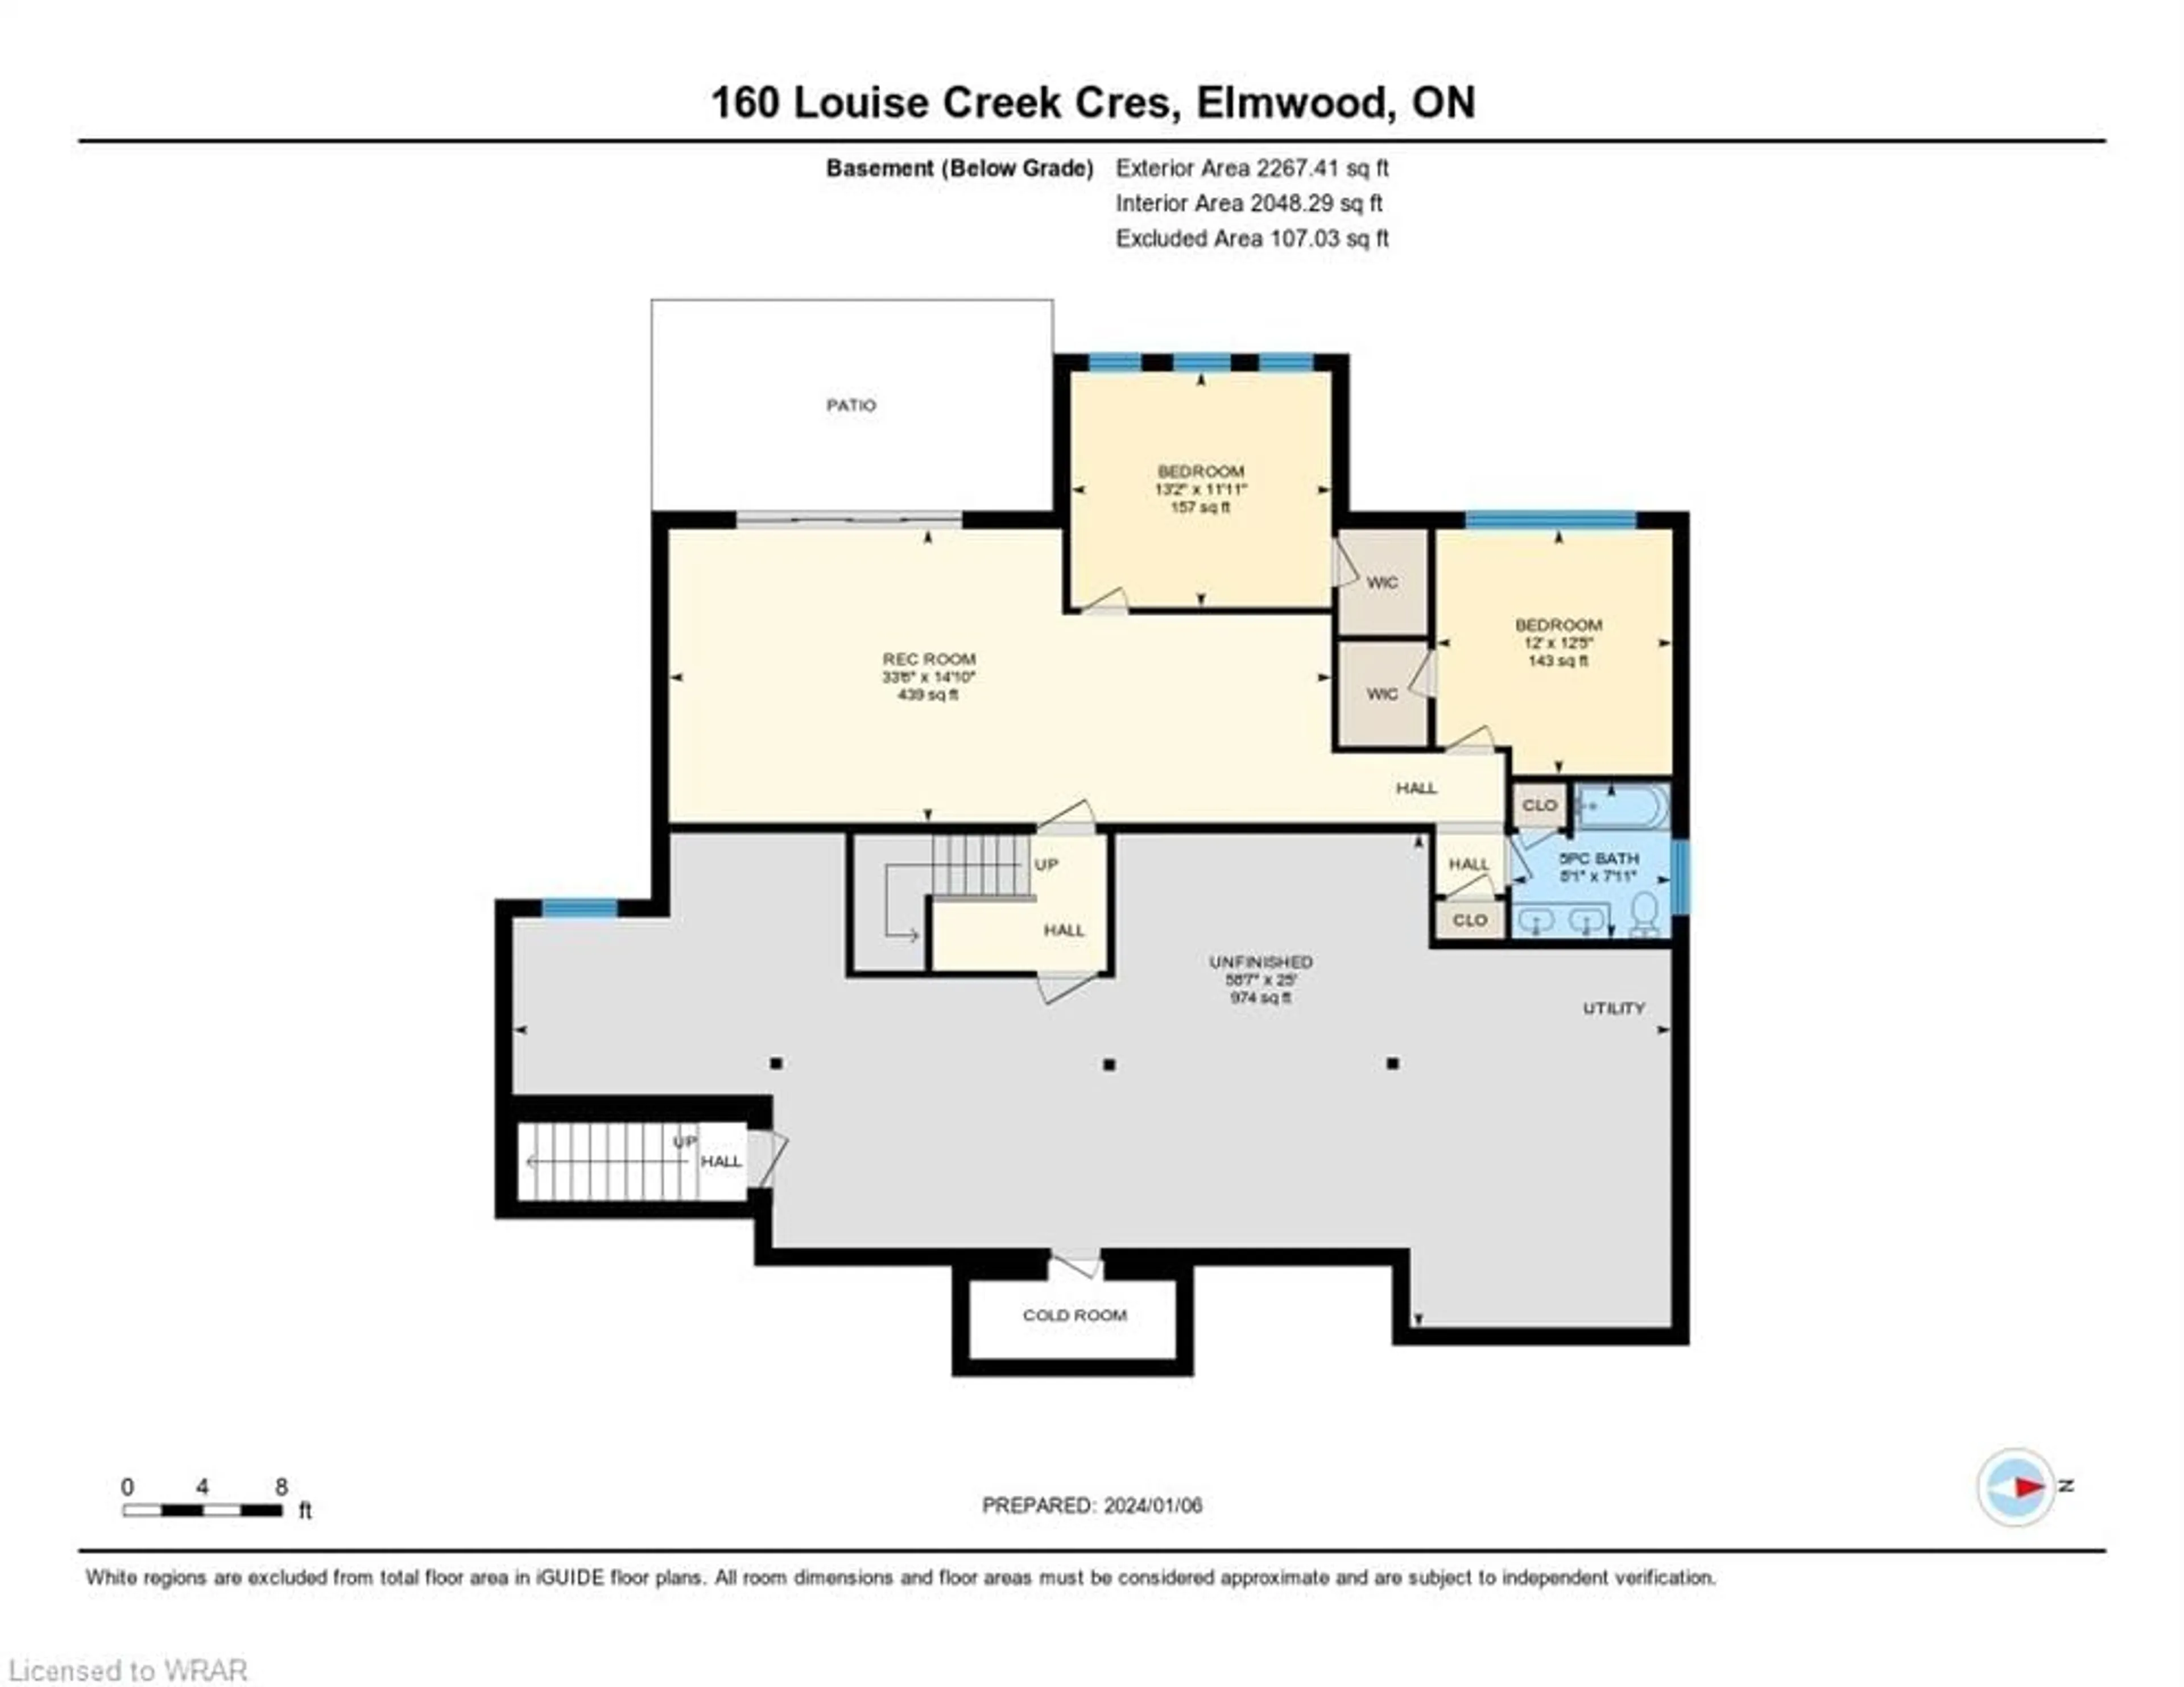 Floor plan for 160 Louise Creek Cres, Elmwood Ontario N0G 1S0